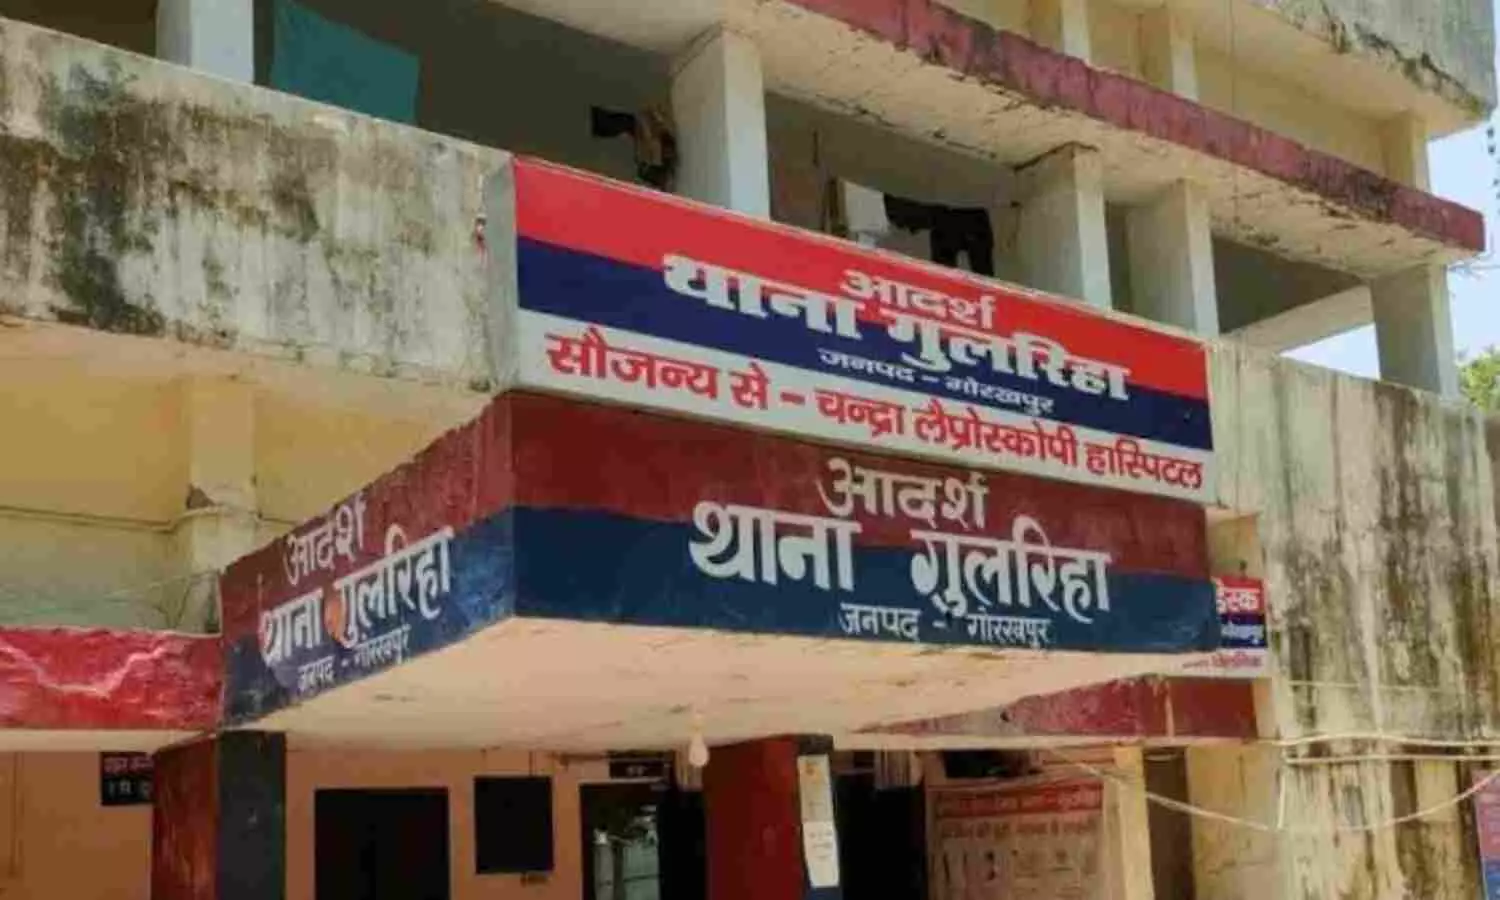 Gorakhpur Crime: केंद्रीय मंत्री के गनर से गोरखपुर में हुई जालसाजी, जमीन दिखाकर ठग लिए 18 लाख